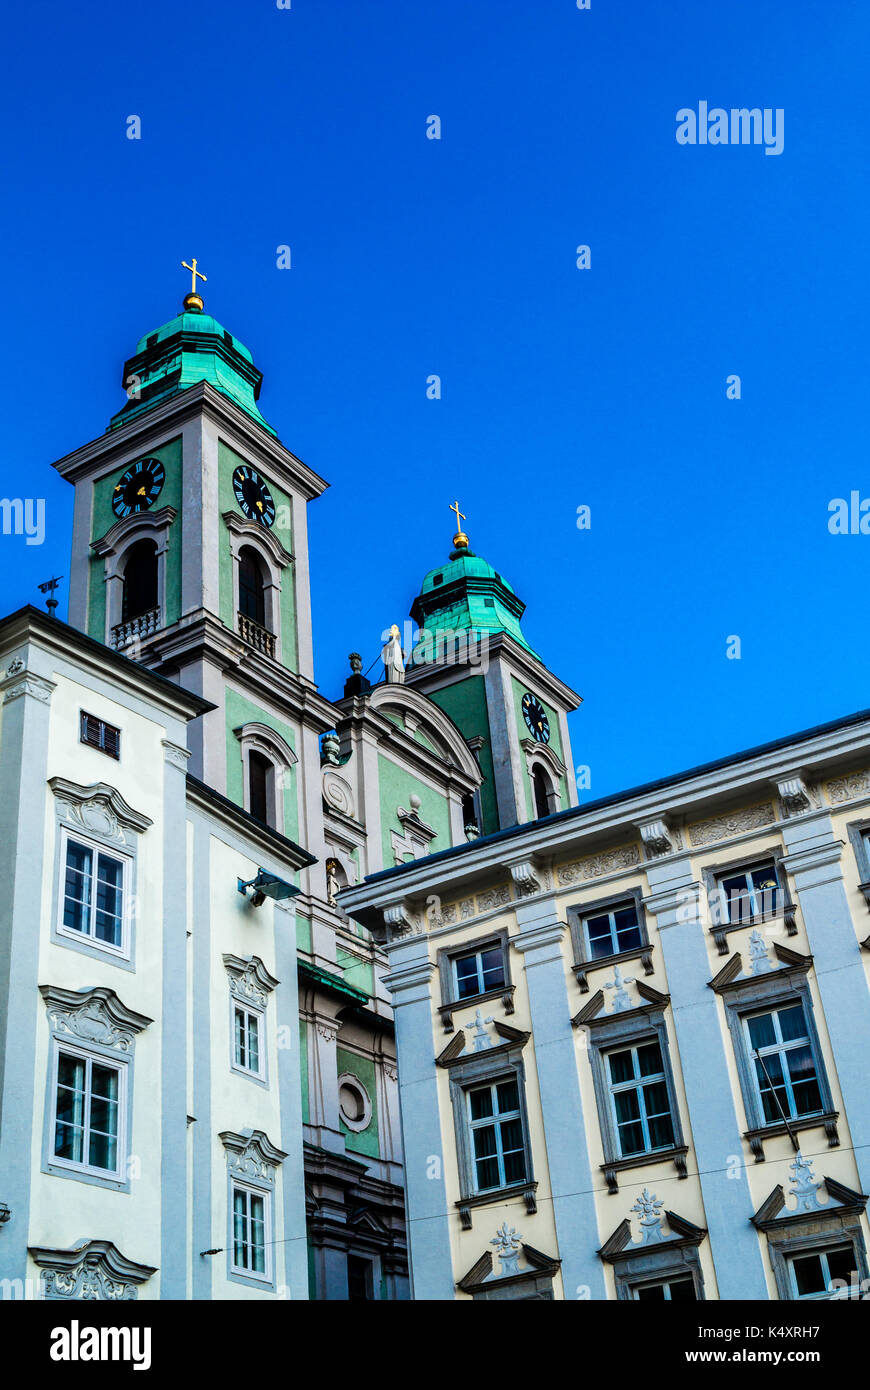 Antigua iglesia en Linz, Austria, con una fachada exterior azul aqua, un lugar de interés y una monumental obra de arte y arquitectura Foto de stock